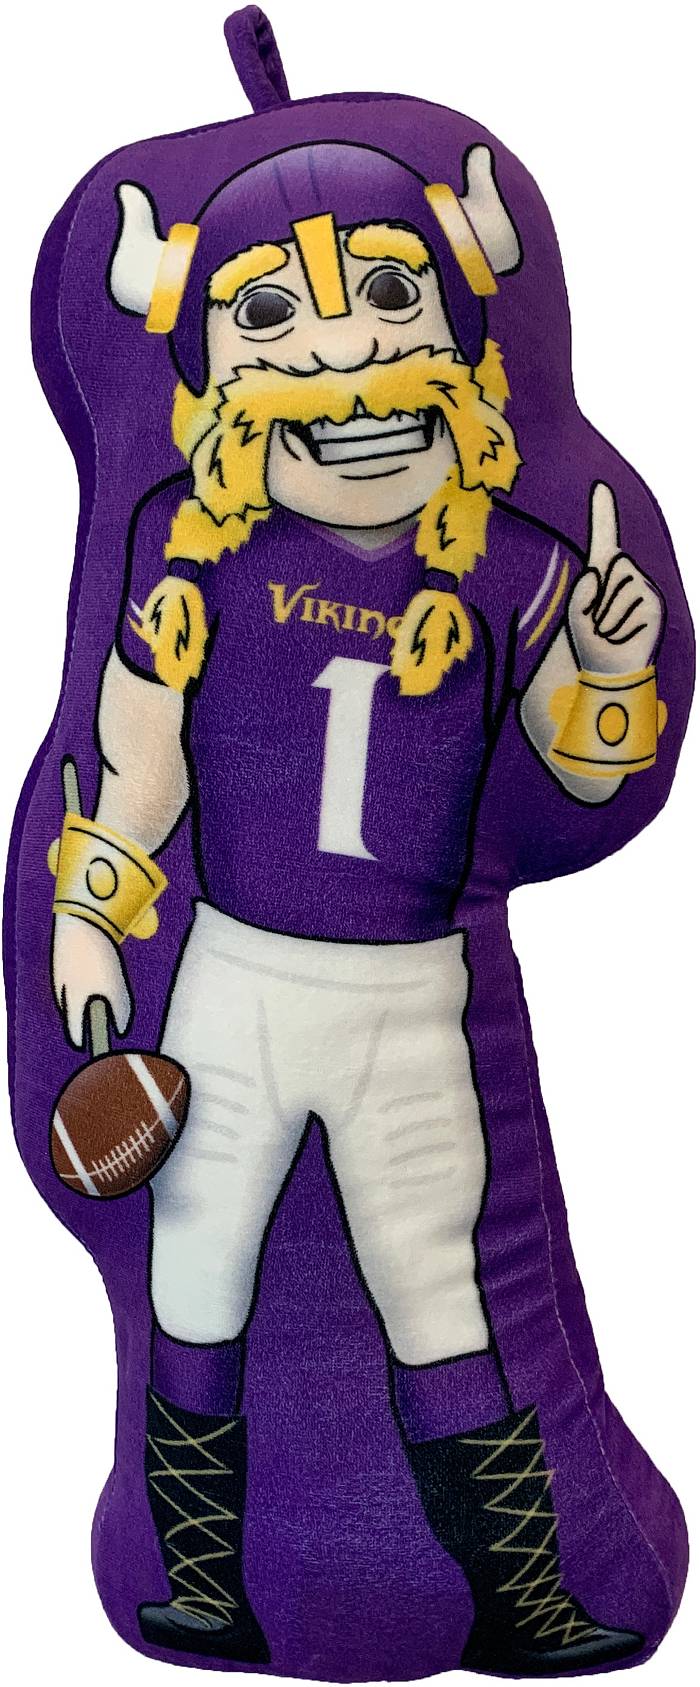 Pegasus Sports Minnesota Vikings Mascot Pillow